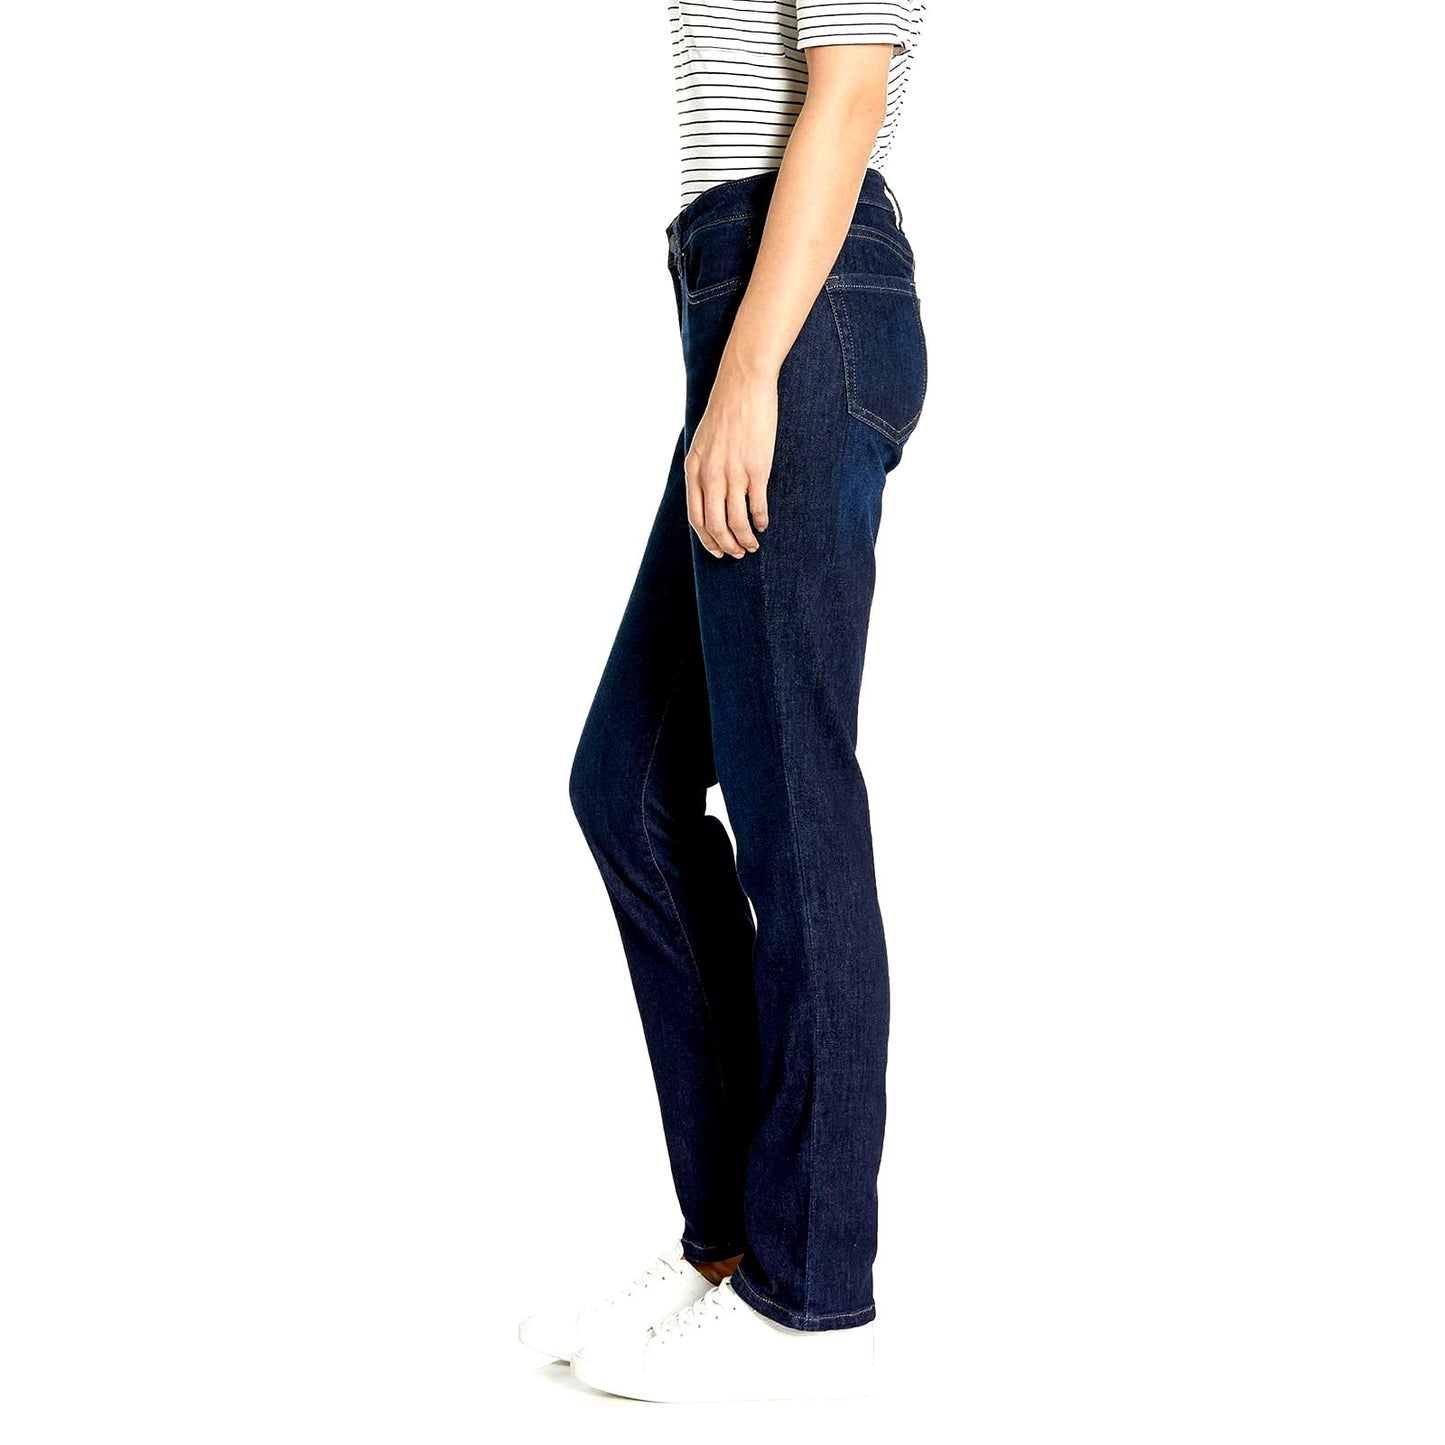 Amazon Essentials Women's Denim Slim Straight Blue Jeans, Dark Wash, 12 Long